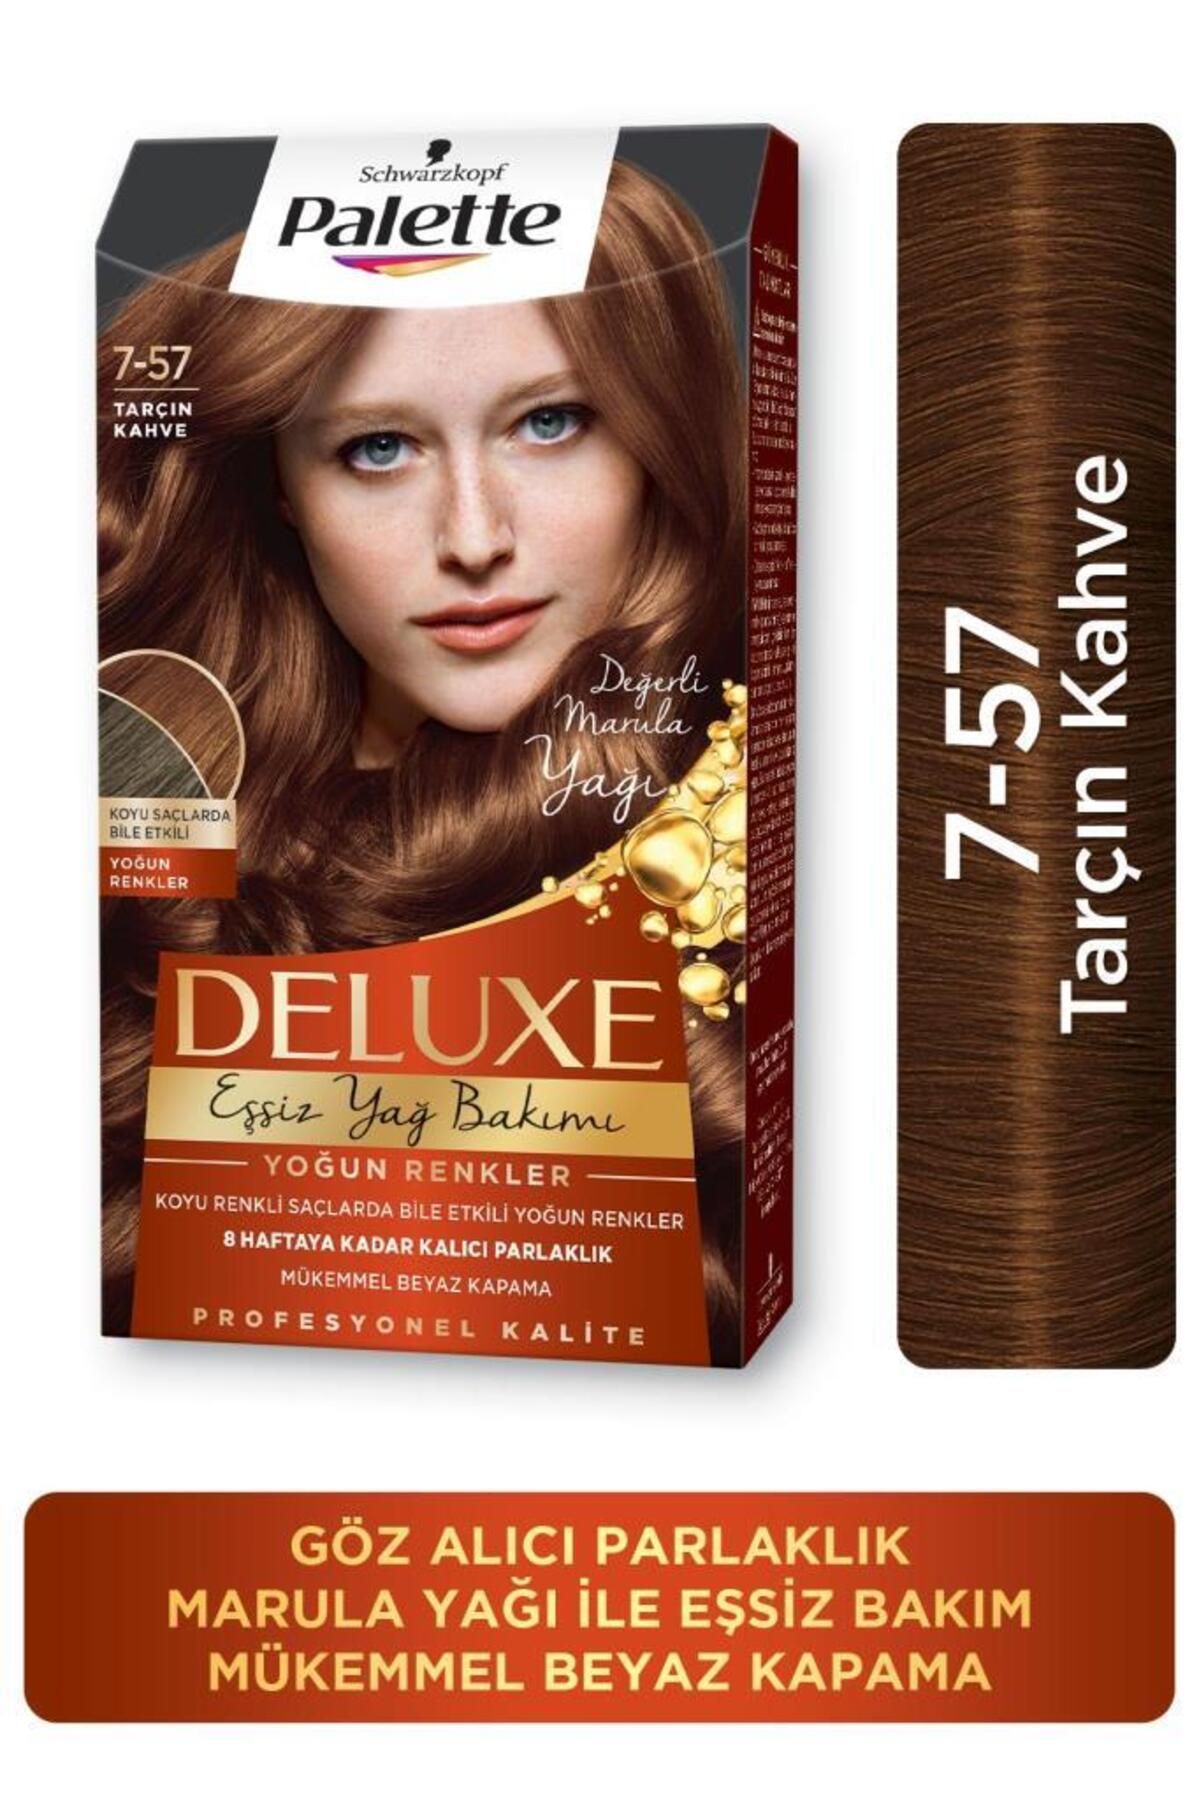 Palette Schwarzkopf Palette Deluxe Yoğun Renkler 7-57 Tarçin Kahve Saç Boyası